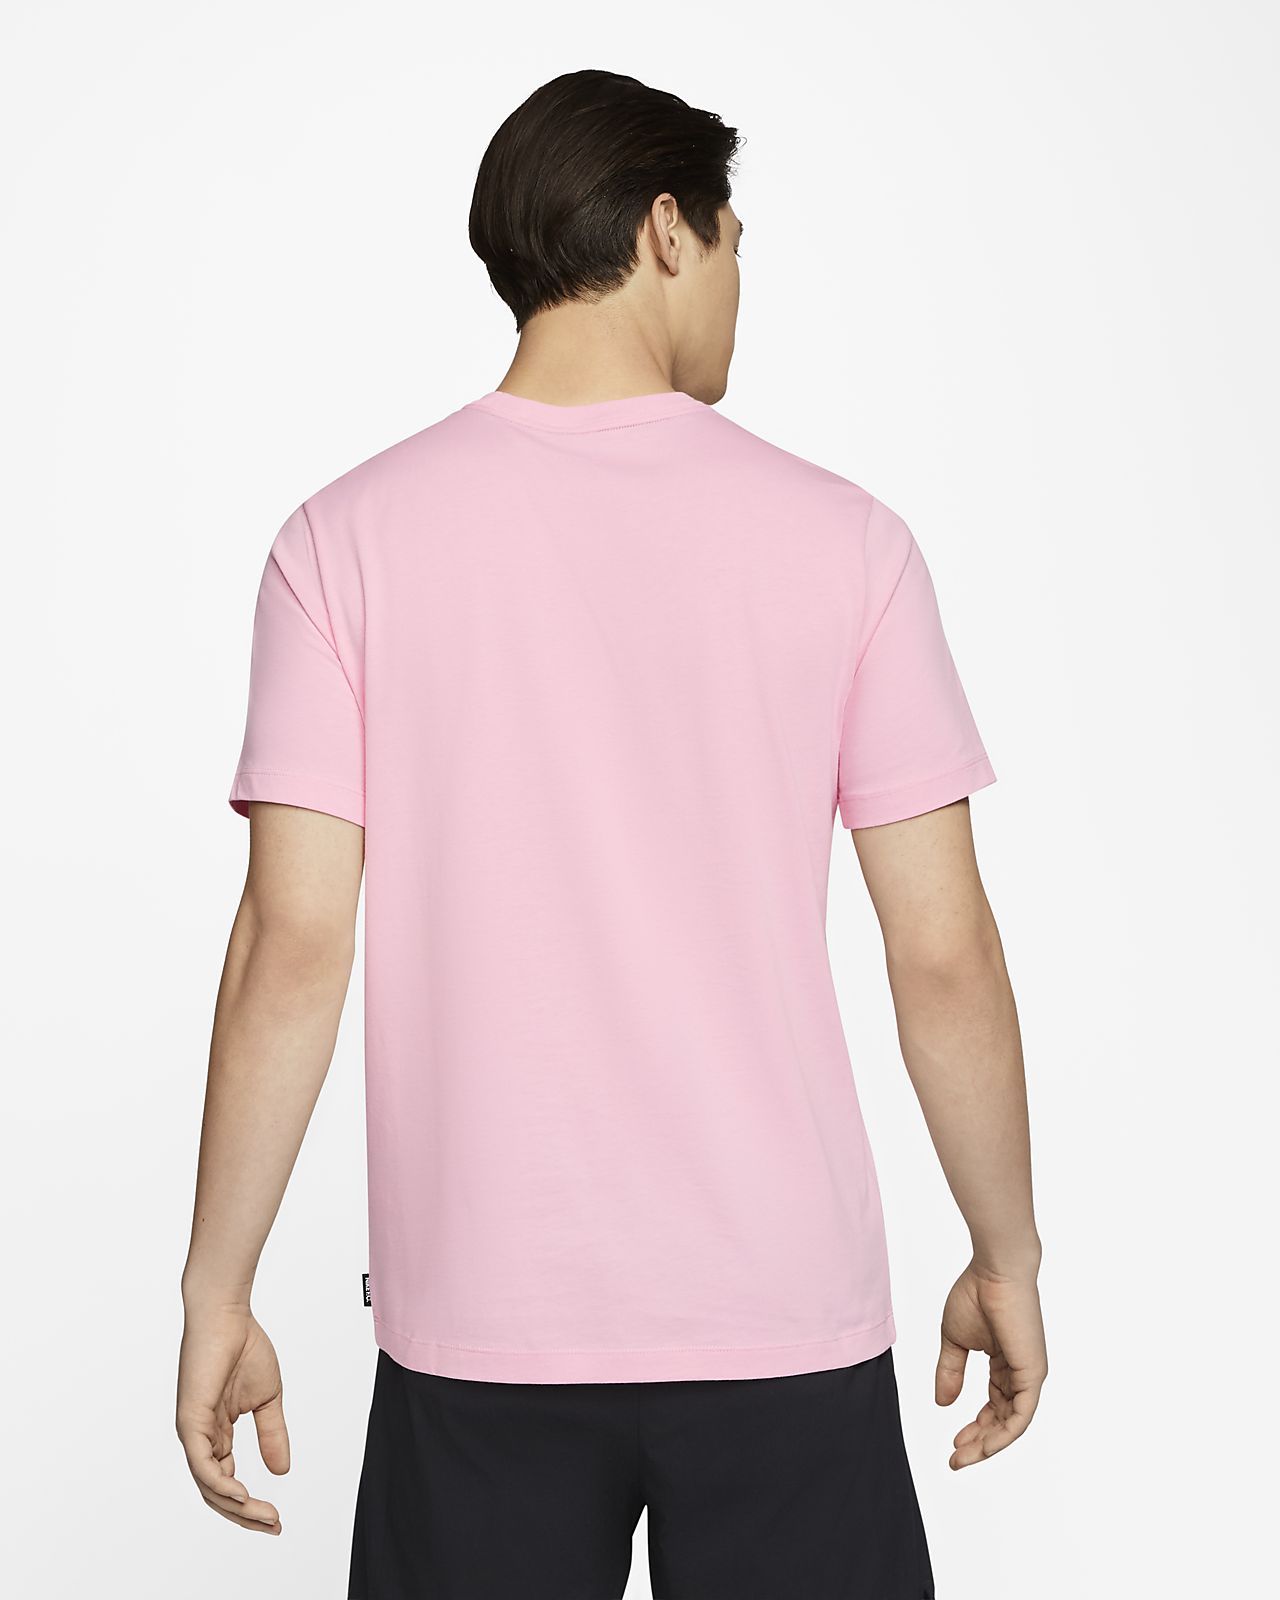 nike fc pink shirt